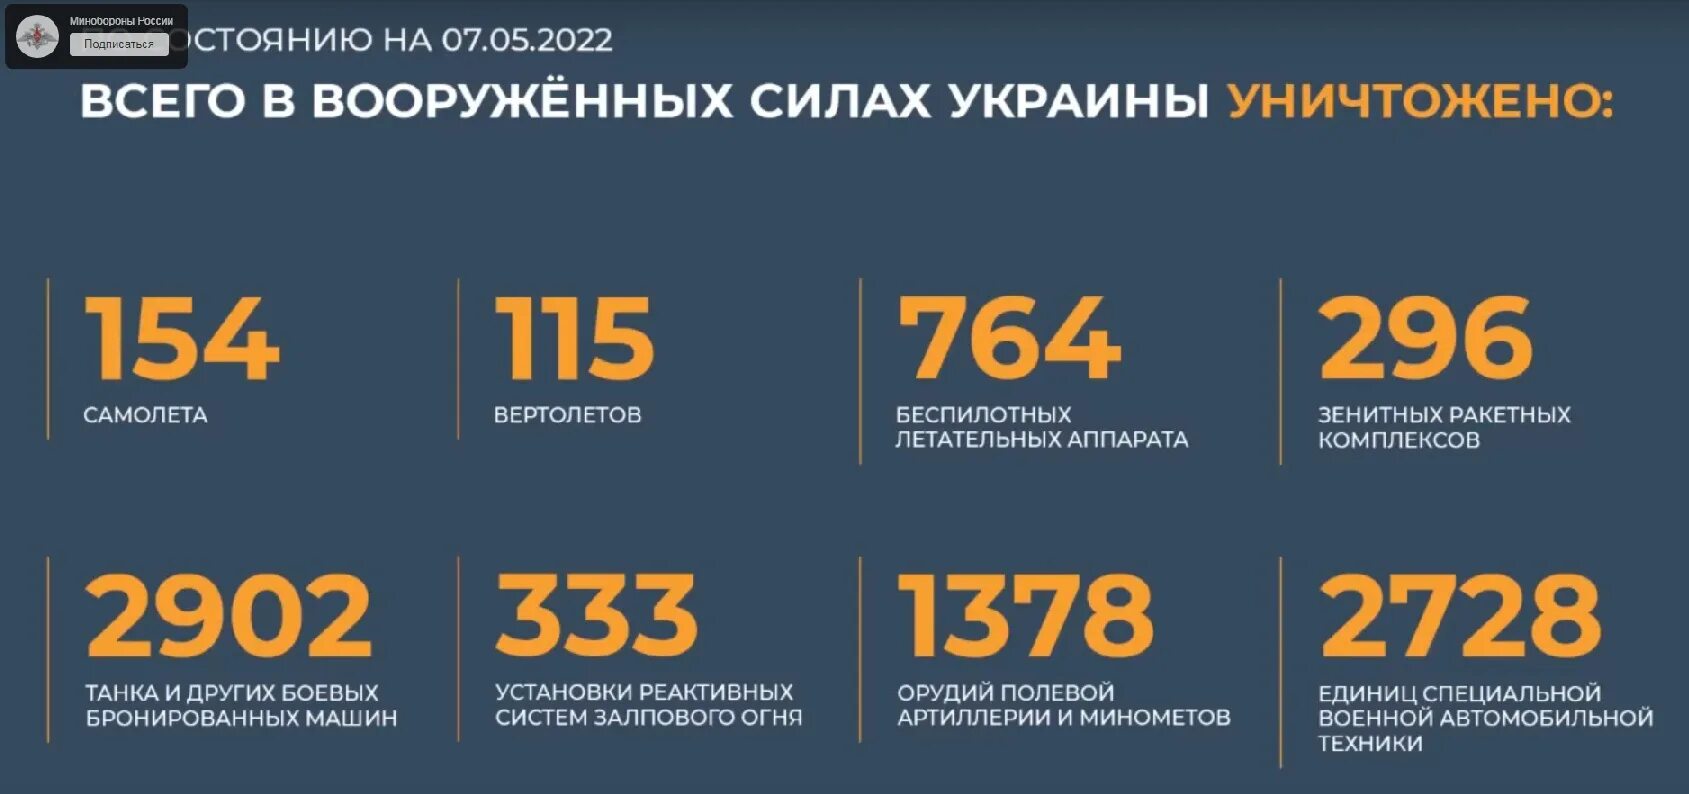 Потери украины мо. Потери техники на Украине 2022. Потери техники ВСУ таблица. Потери ВСУ инфографика.